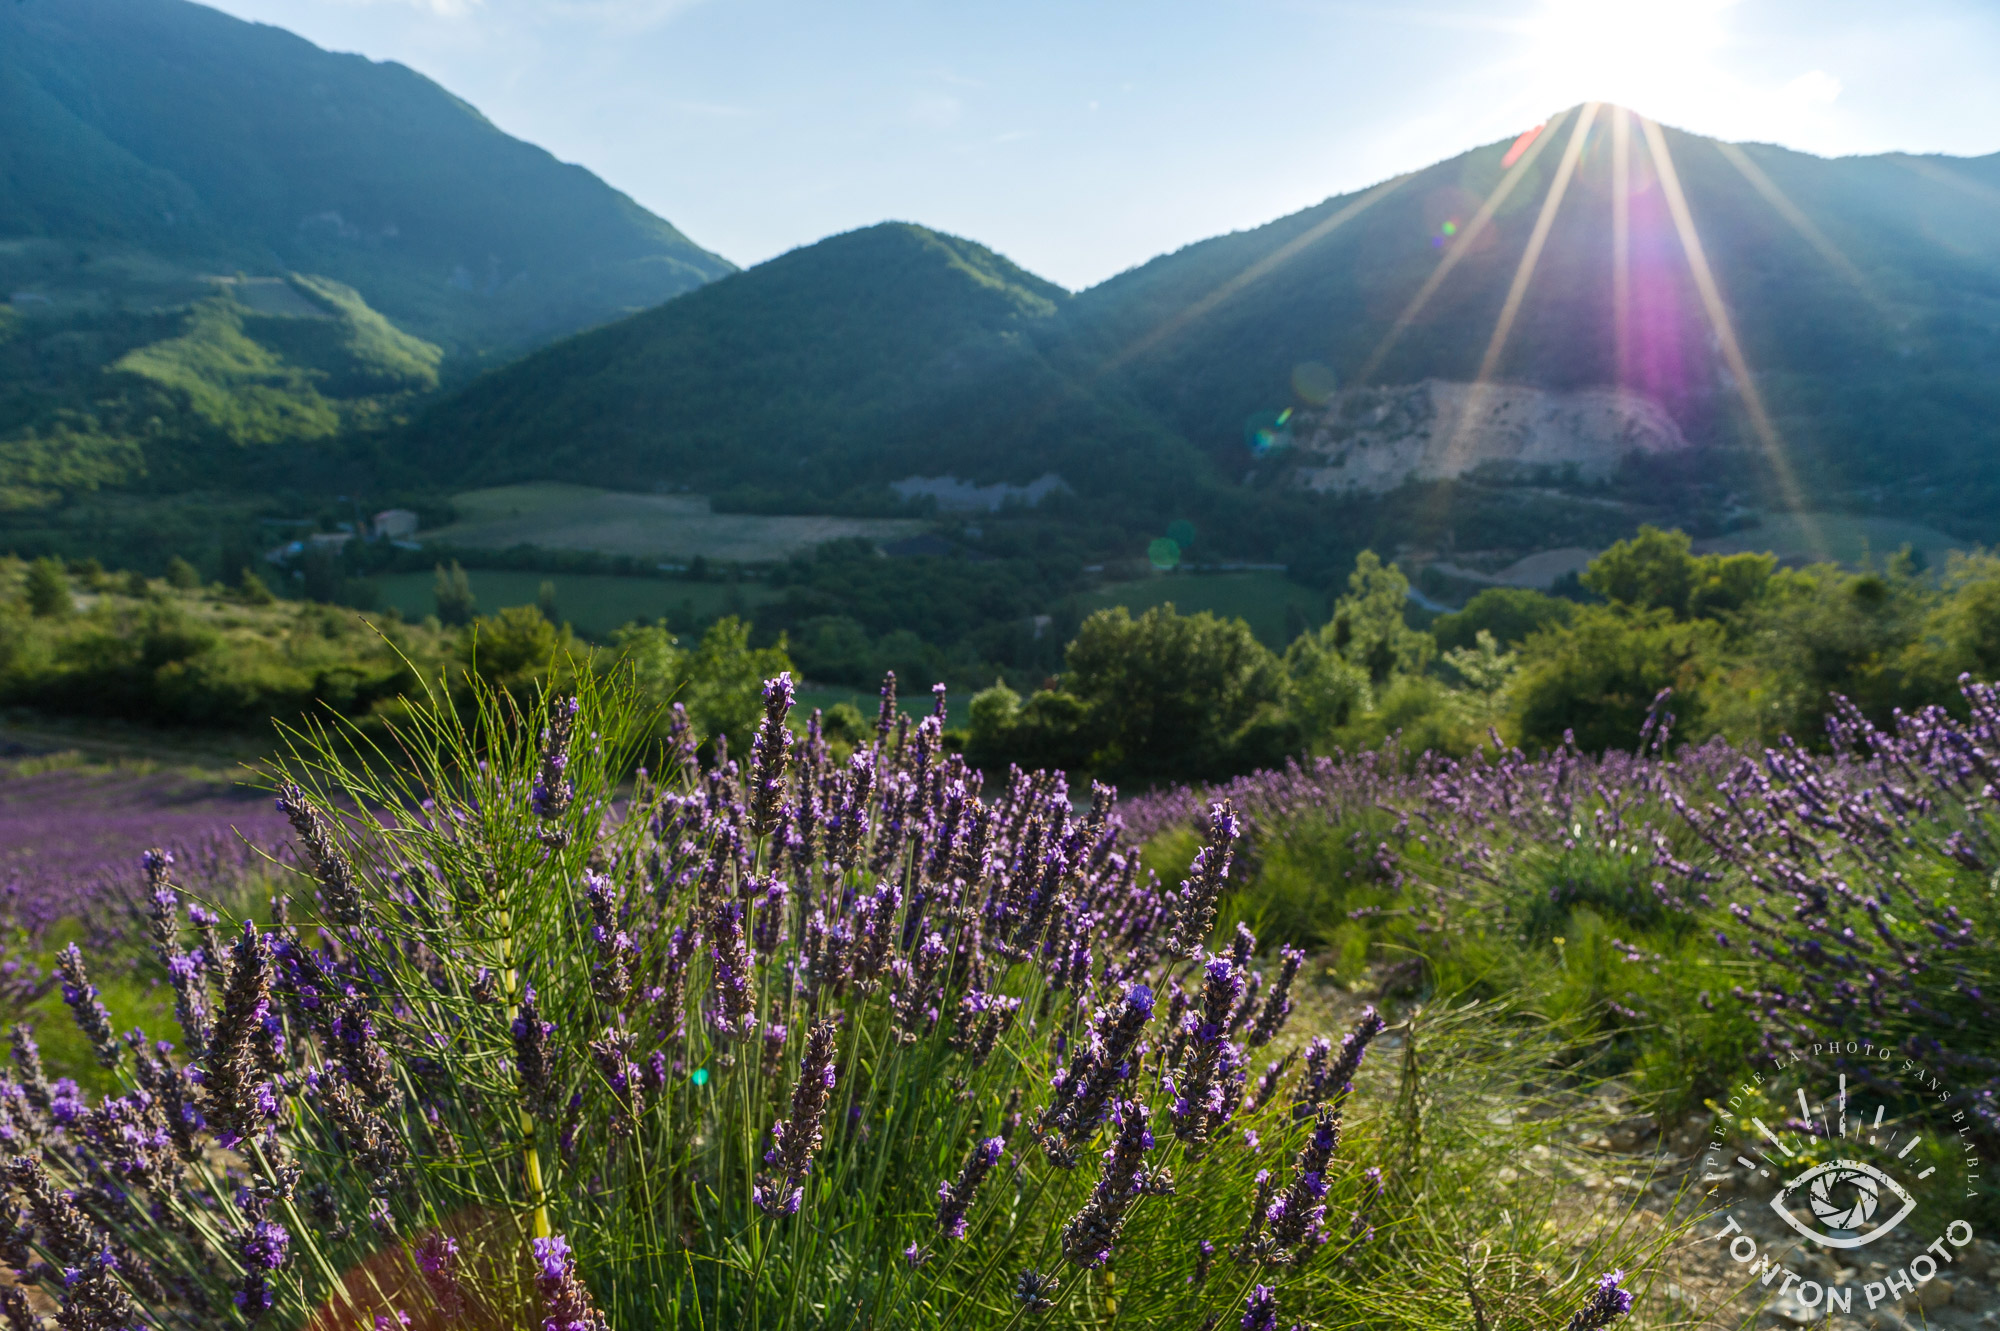 En cachant partiellement le soleil derrière la montagne, j'ai pu capturer les rayons du soleil pour illustrer le fait que les champs de lavande sont baignés de soleil dans cette vallée de la Drôme, France. © Tonton Photo